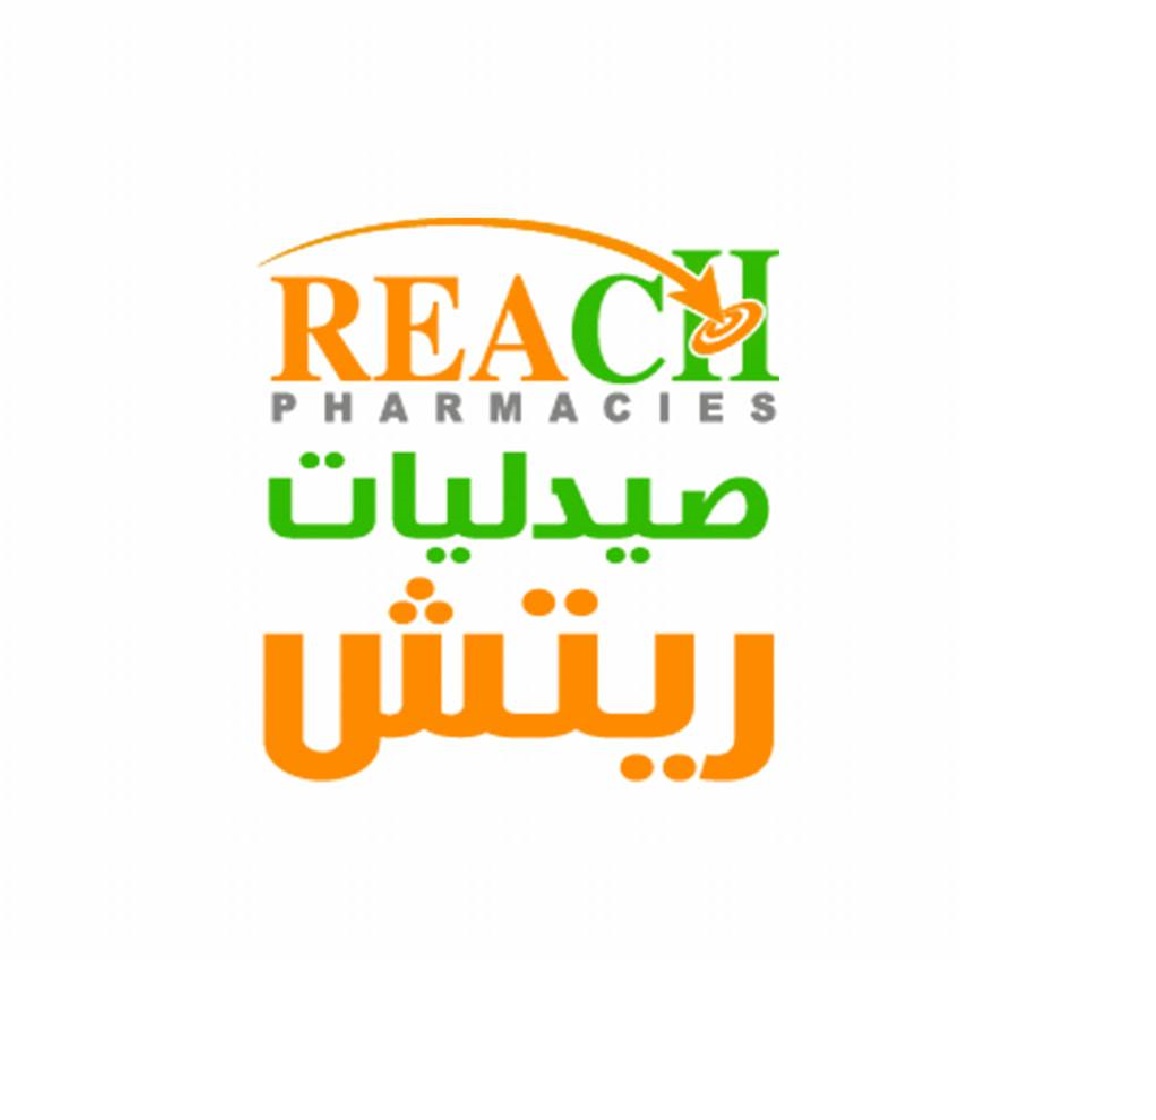 Reach Pharmacies